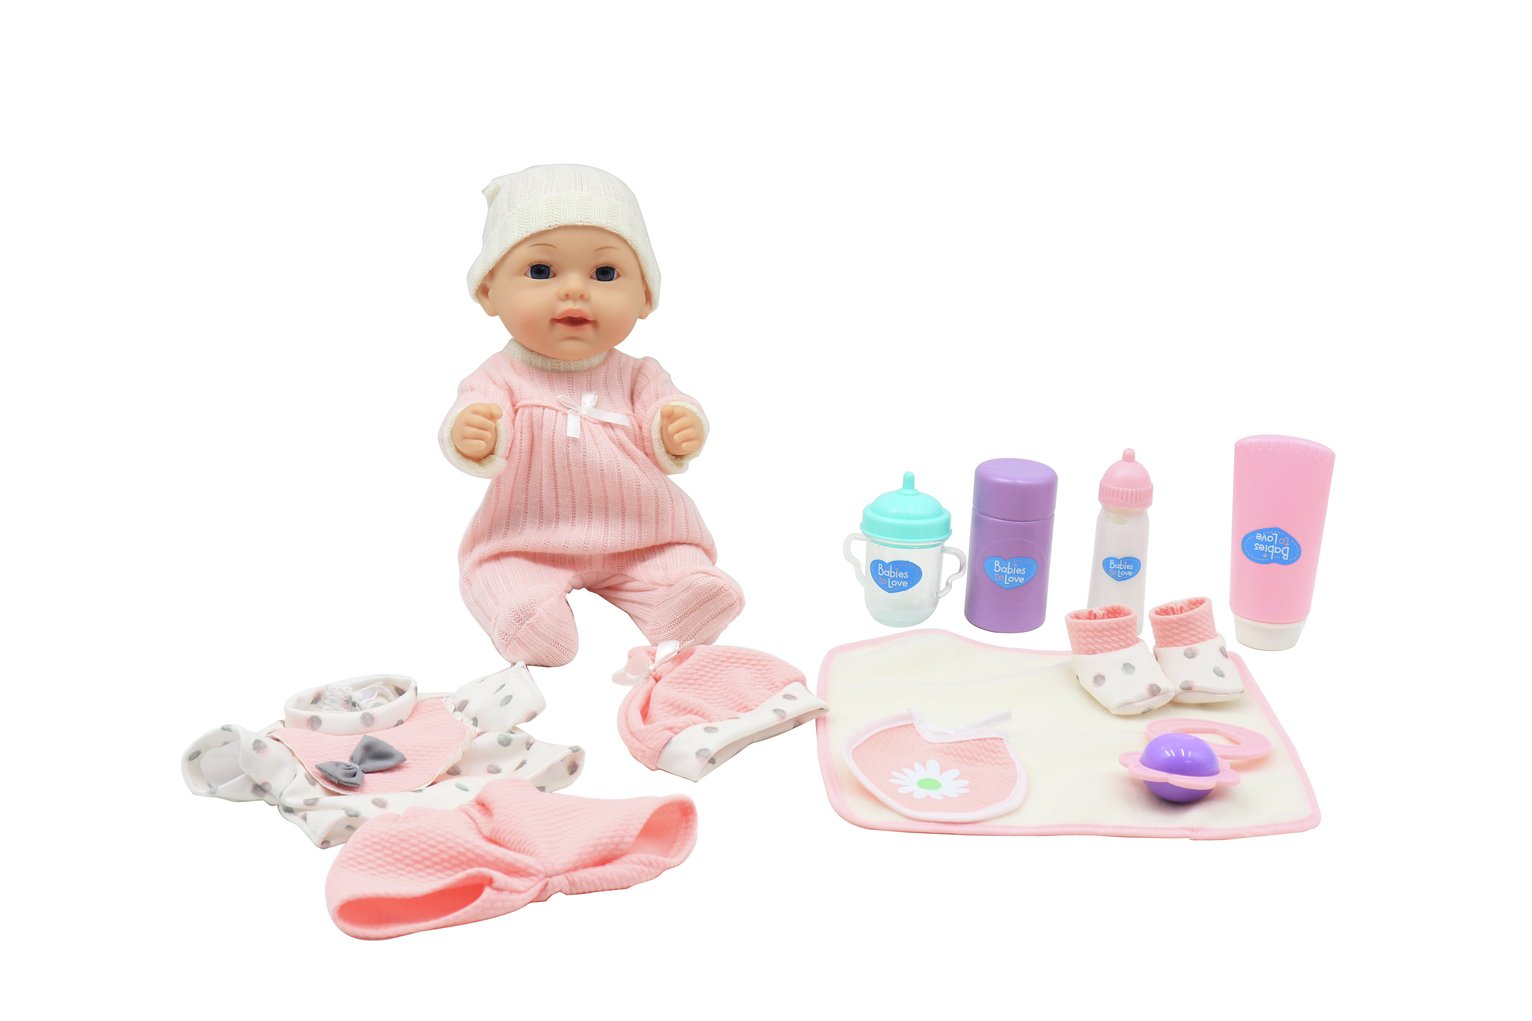 baby doll accessories argos